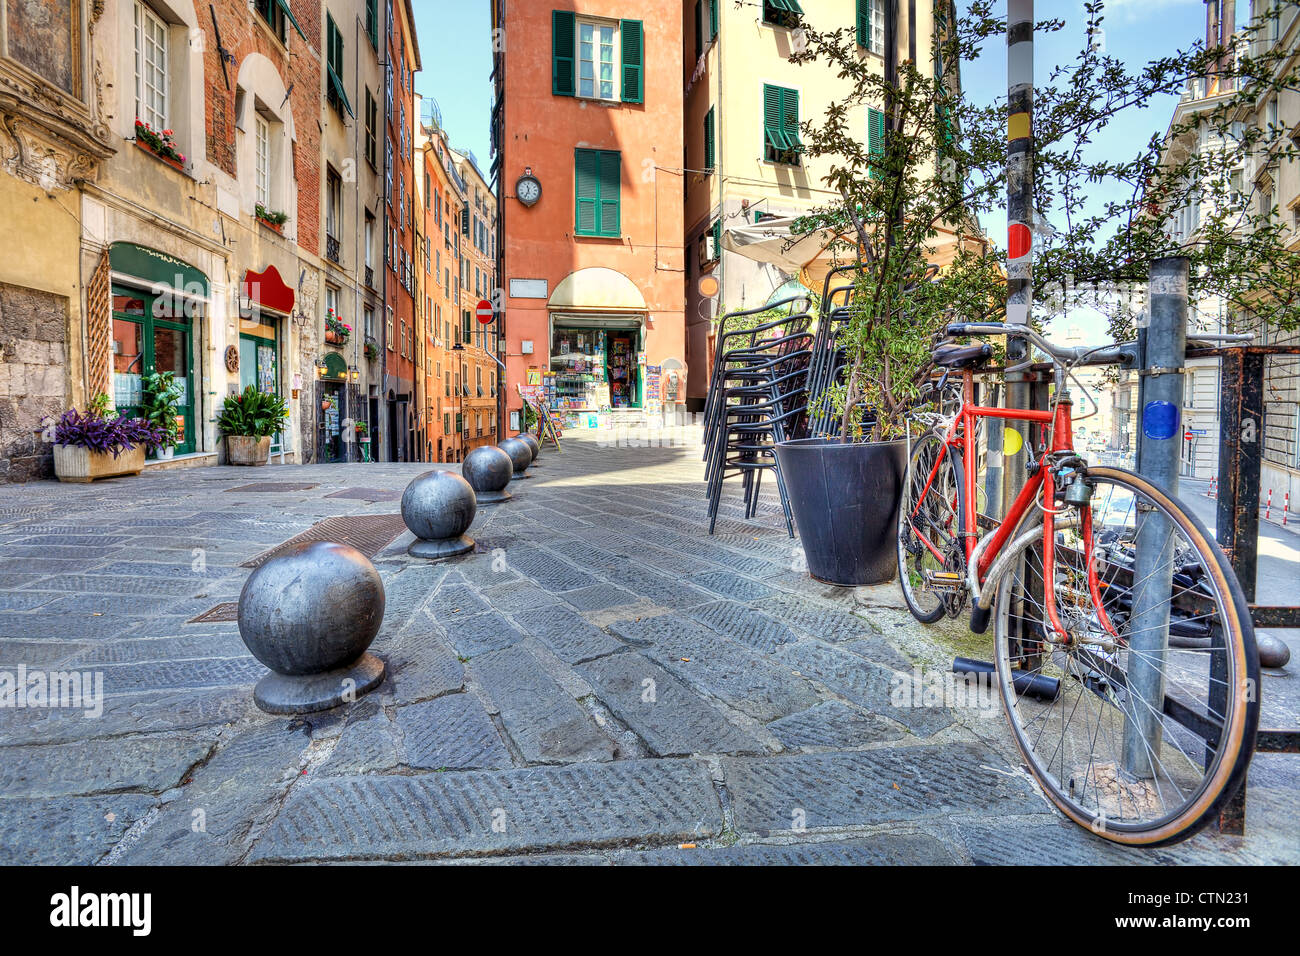 Location et de vieux bâtiments colorés sur fond de ville de Gênes, en Italie. Banque D'Images